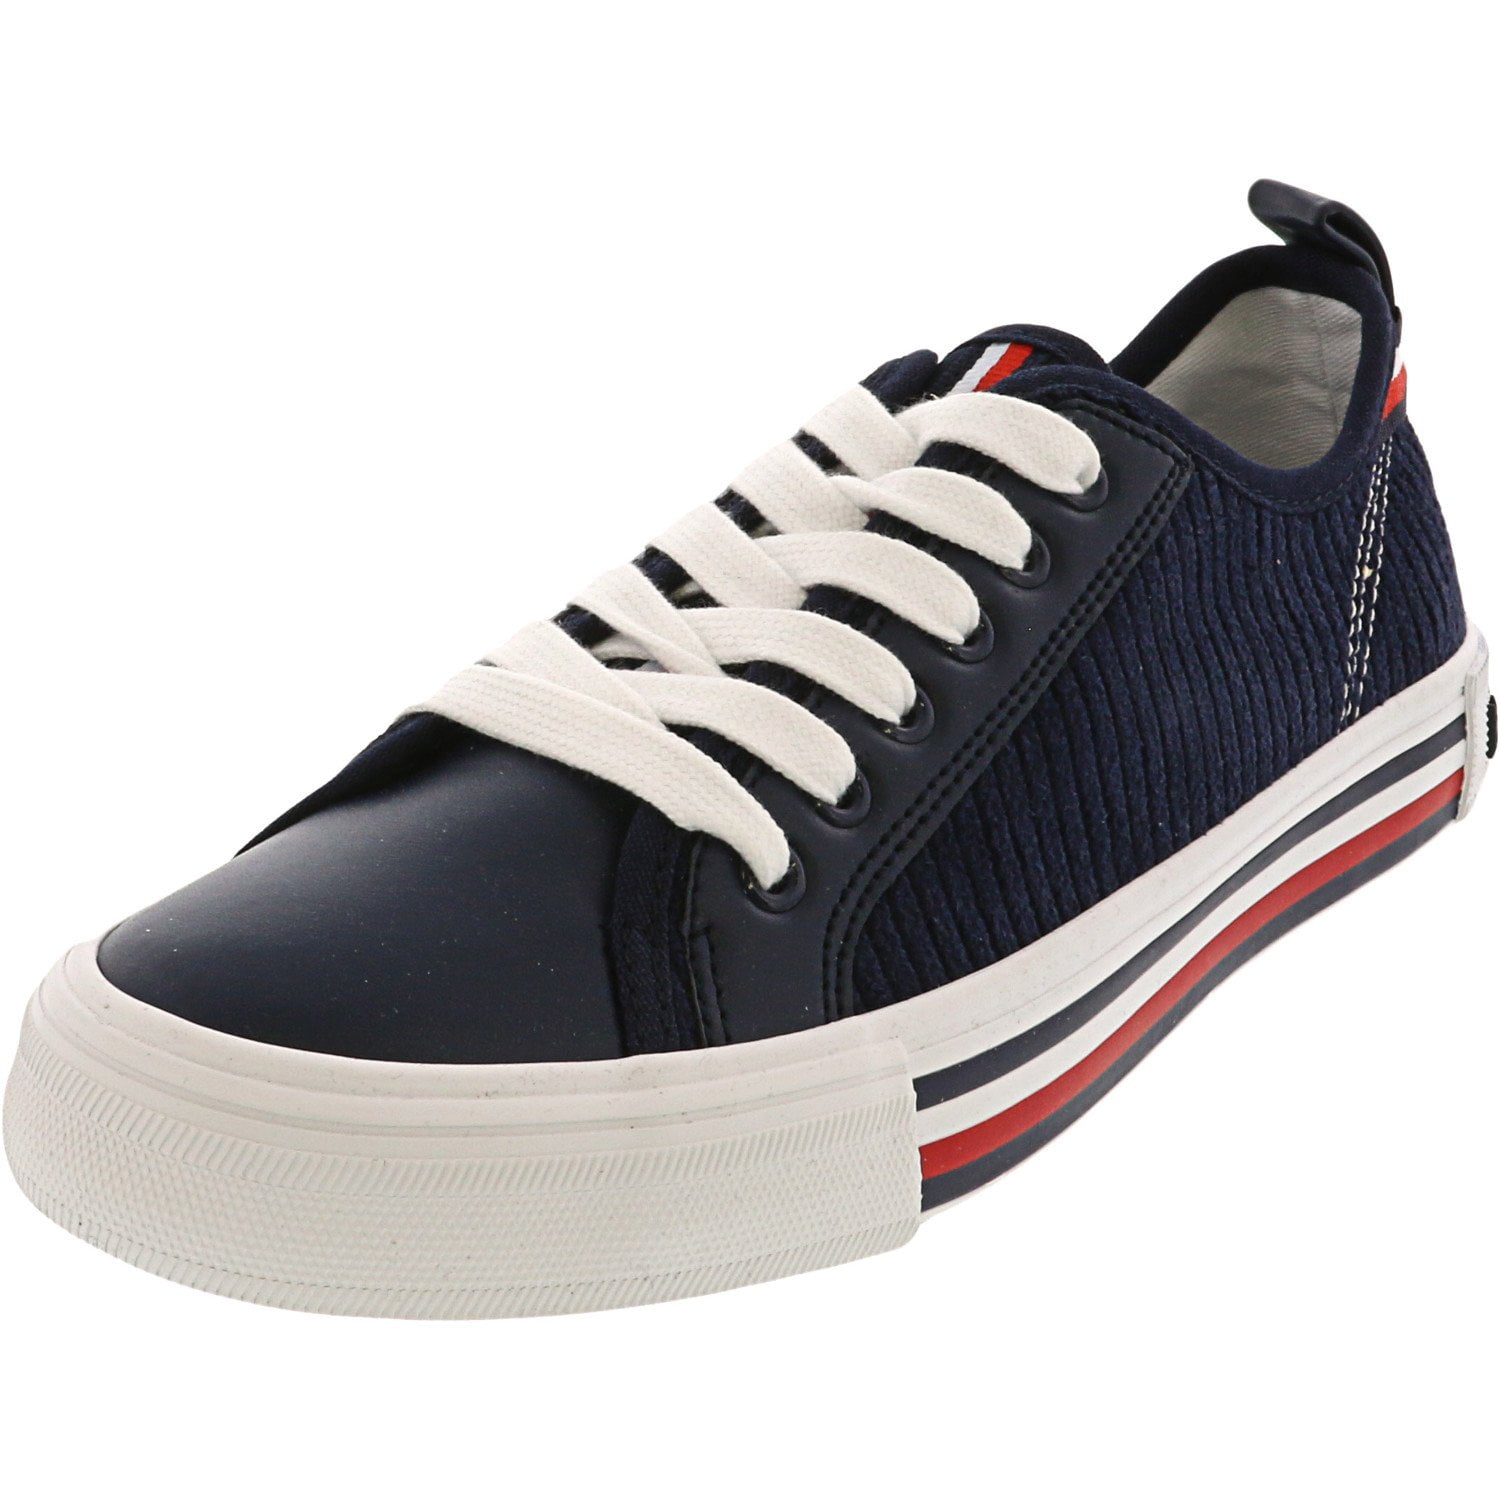 Tommy Hilfiger Women's Hopper 2 Dark Blue Ankle-High Sneaker - 7M ...